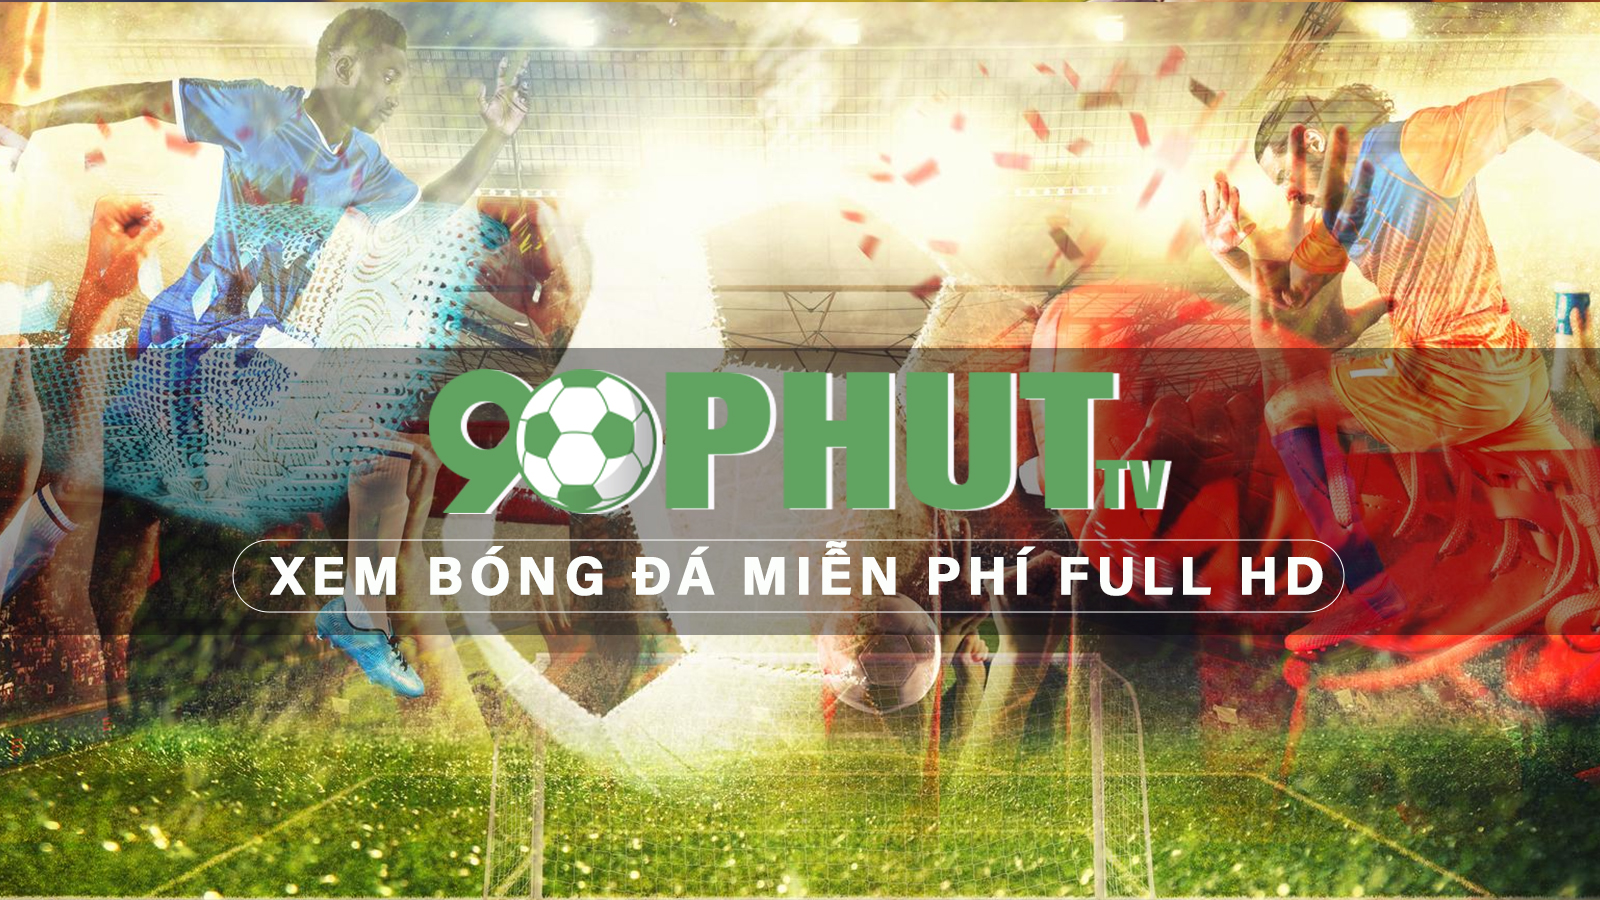 90 Phut - Xem bóng đá miễn phí Full HD